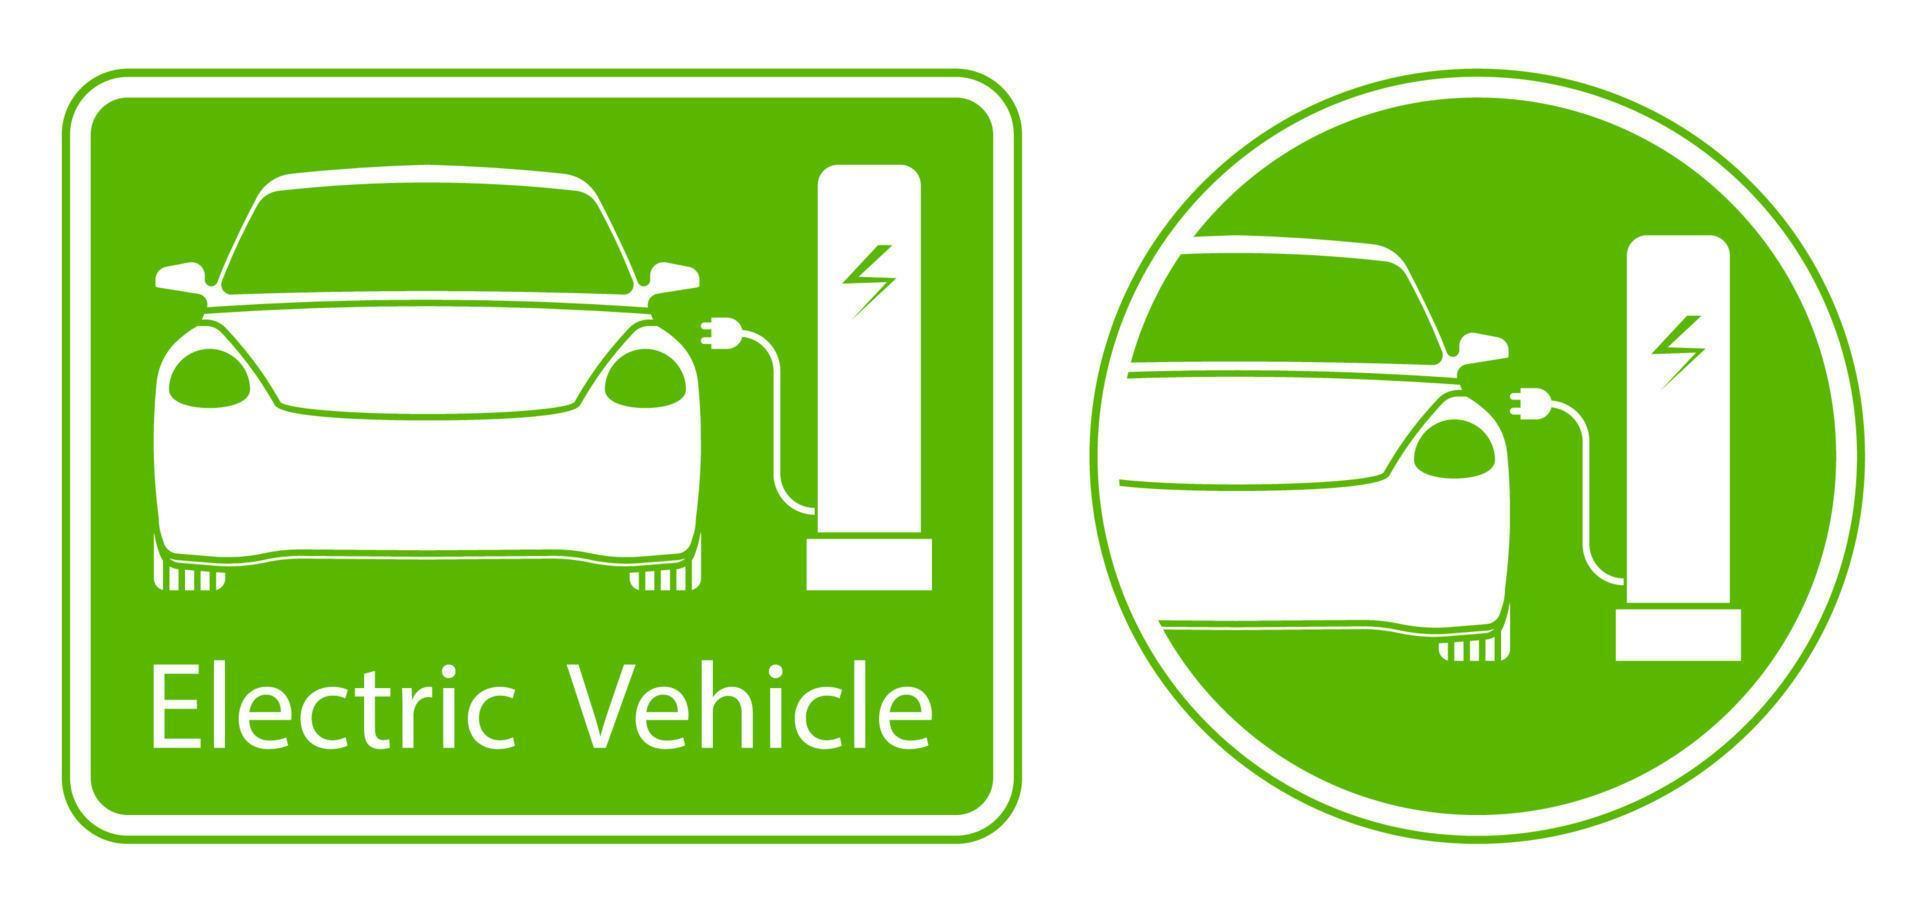 elektrisches ladestationsschild, auto wird an der elektrischen station aufgeladen. umweltfreundliche alternative Energiequellen für den Verkehr. Vektor